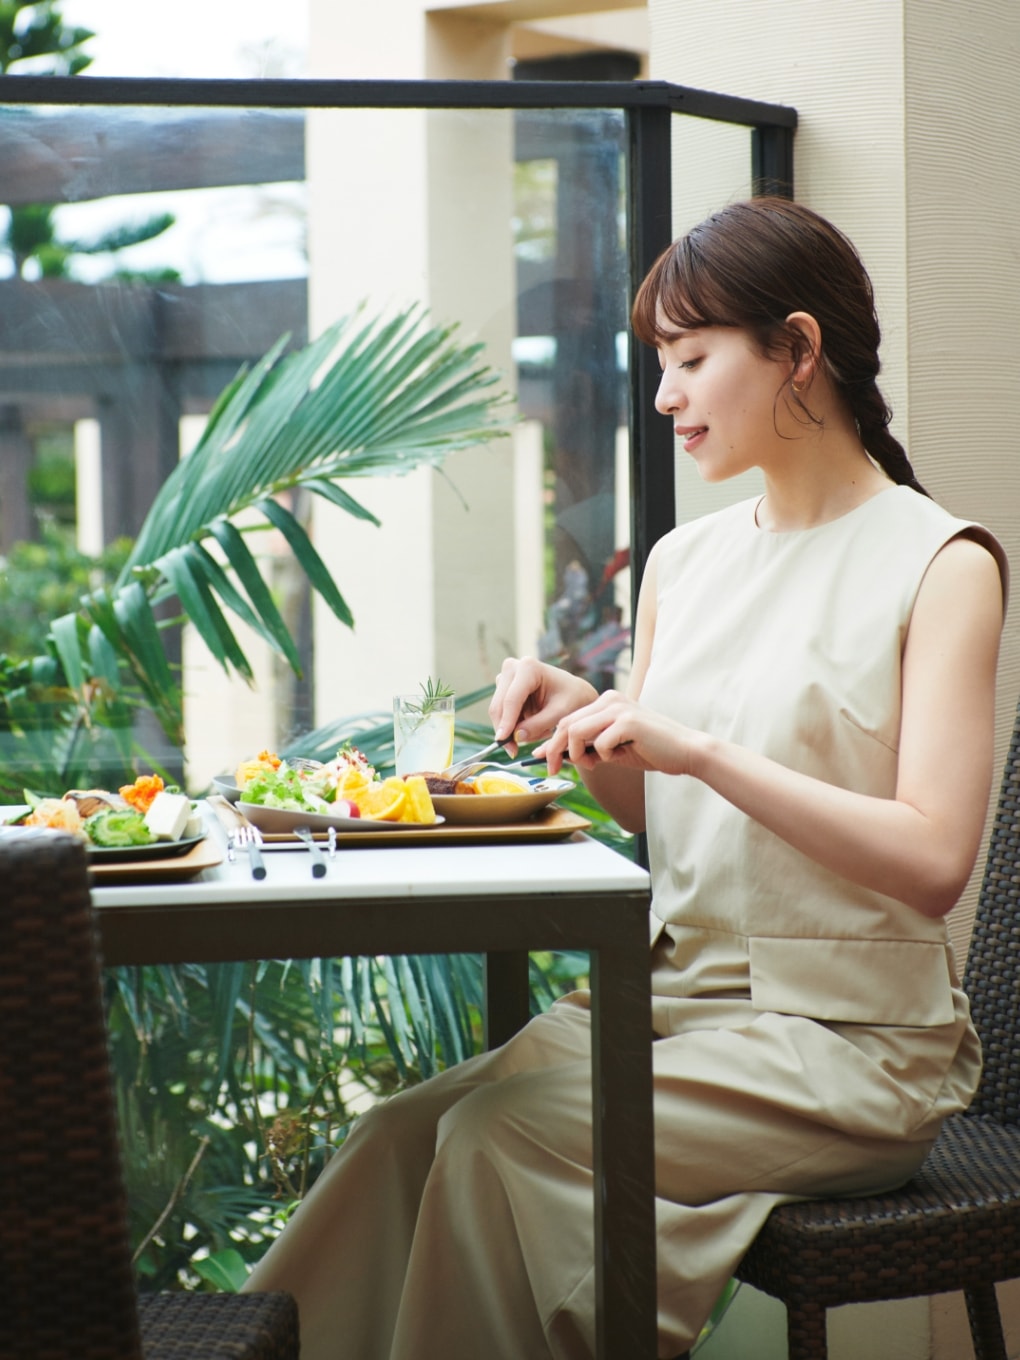 オールインワンを着用した女性がレストランで食事をしている写真